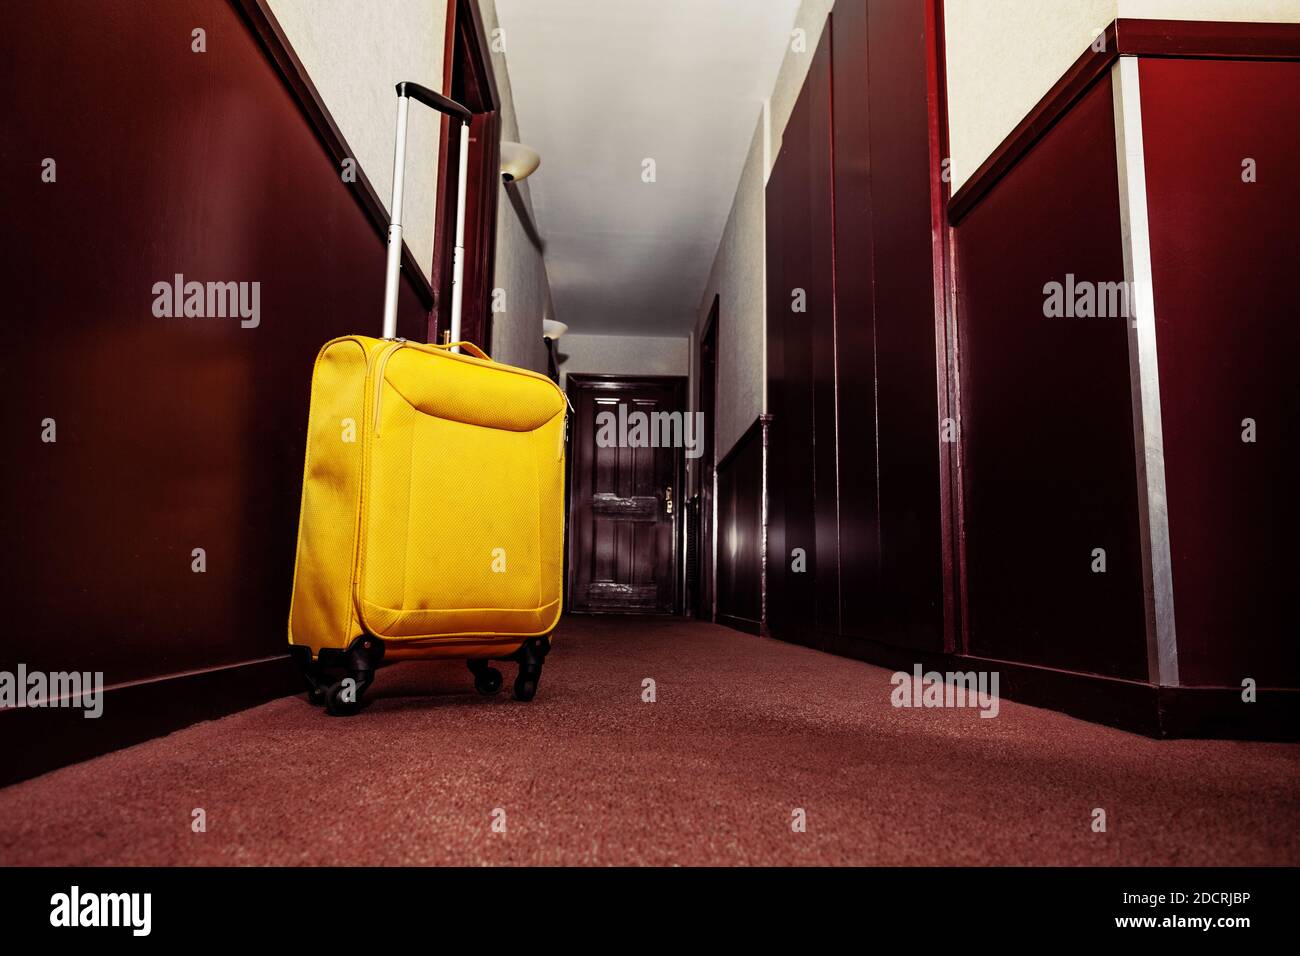 Valise jaune près de la porte de la chambre dans le hall de le concept hôtel - voyage Banque D'Images